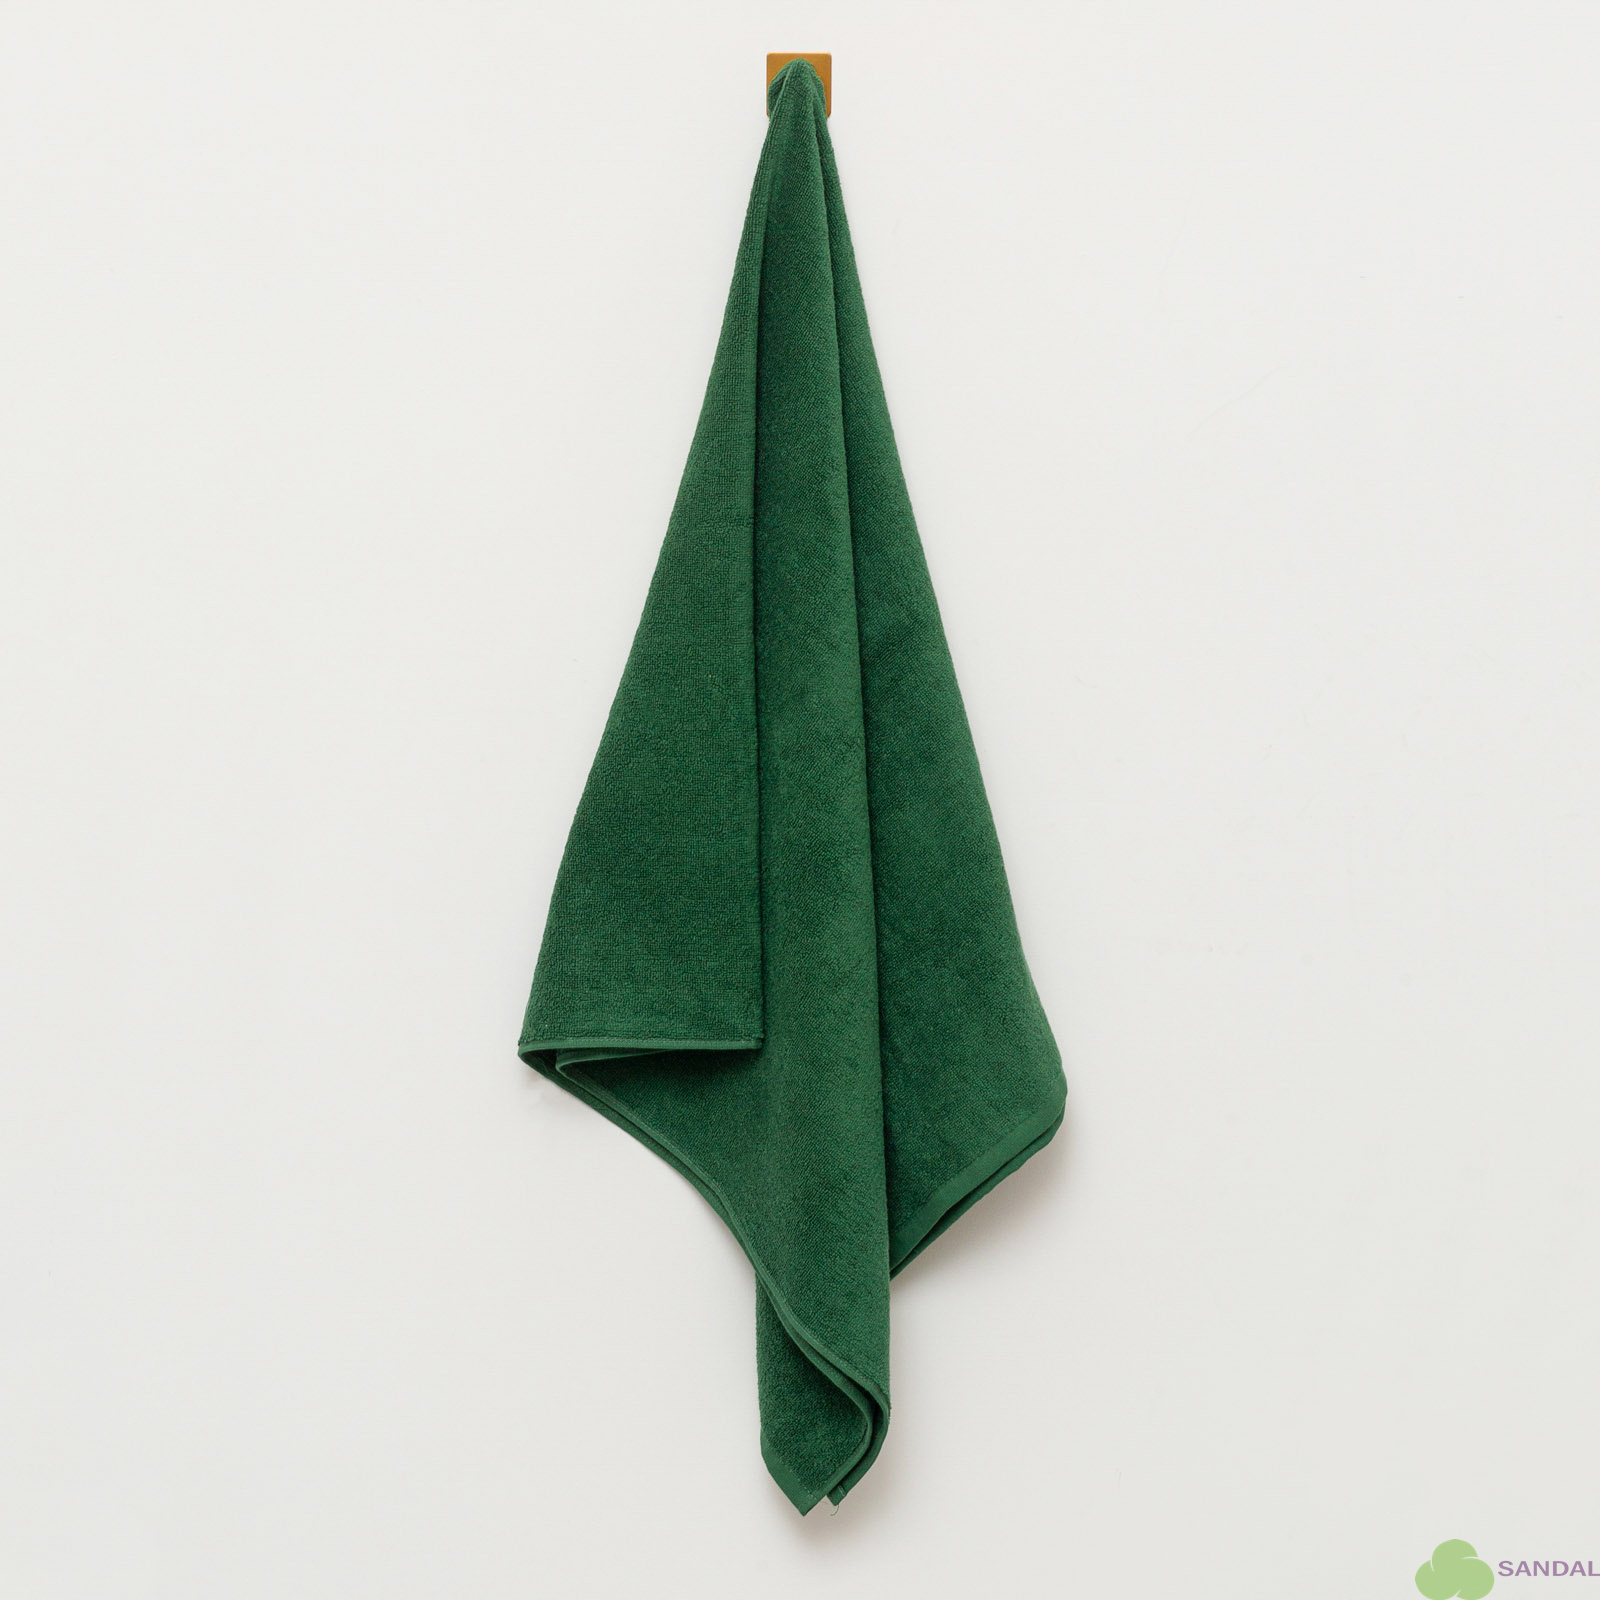 Махровое полотенце Sandal "люкс" 70*140 см., цвет - темно-зеленый.